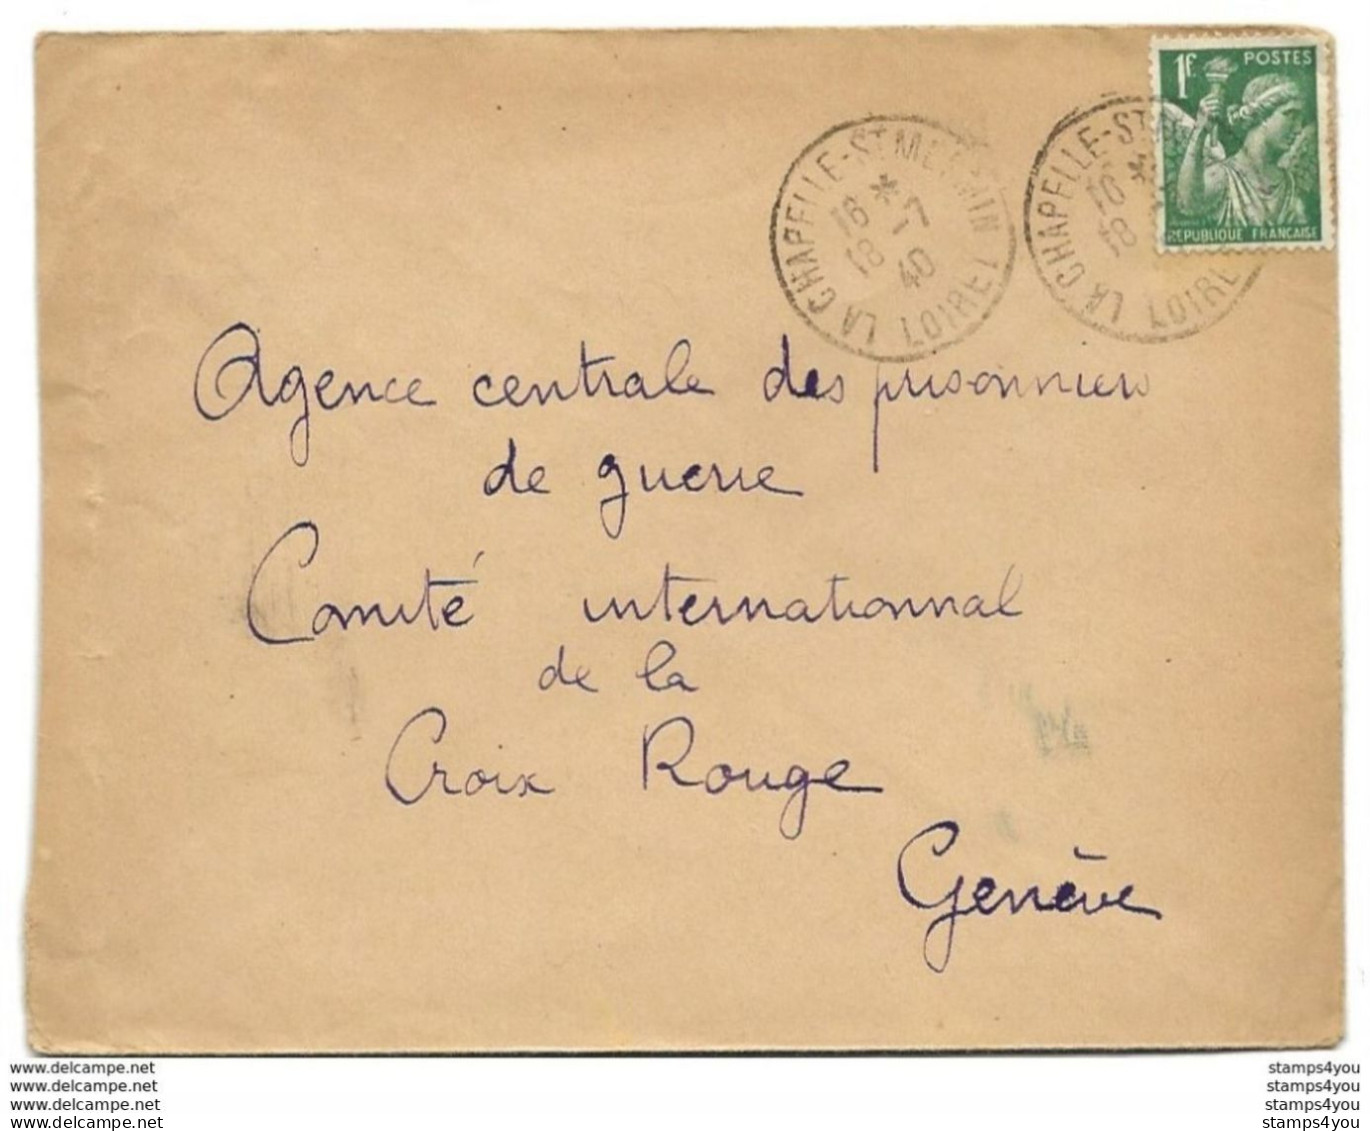 221 - 90 - Enveloppe Envoyée Du Loiret à La Croix Rouge Genève 1940 - Agence Prisonniers De Guerre - Guerra De 1939-45